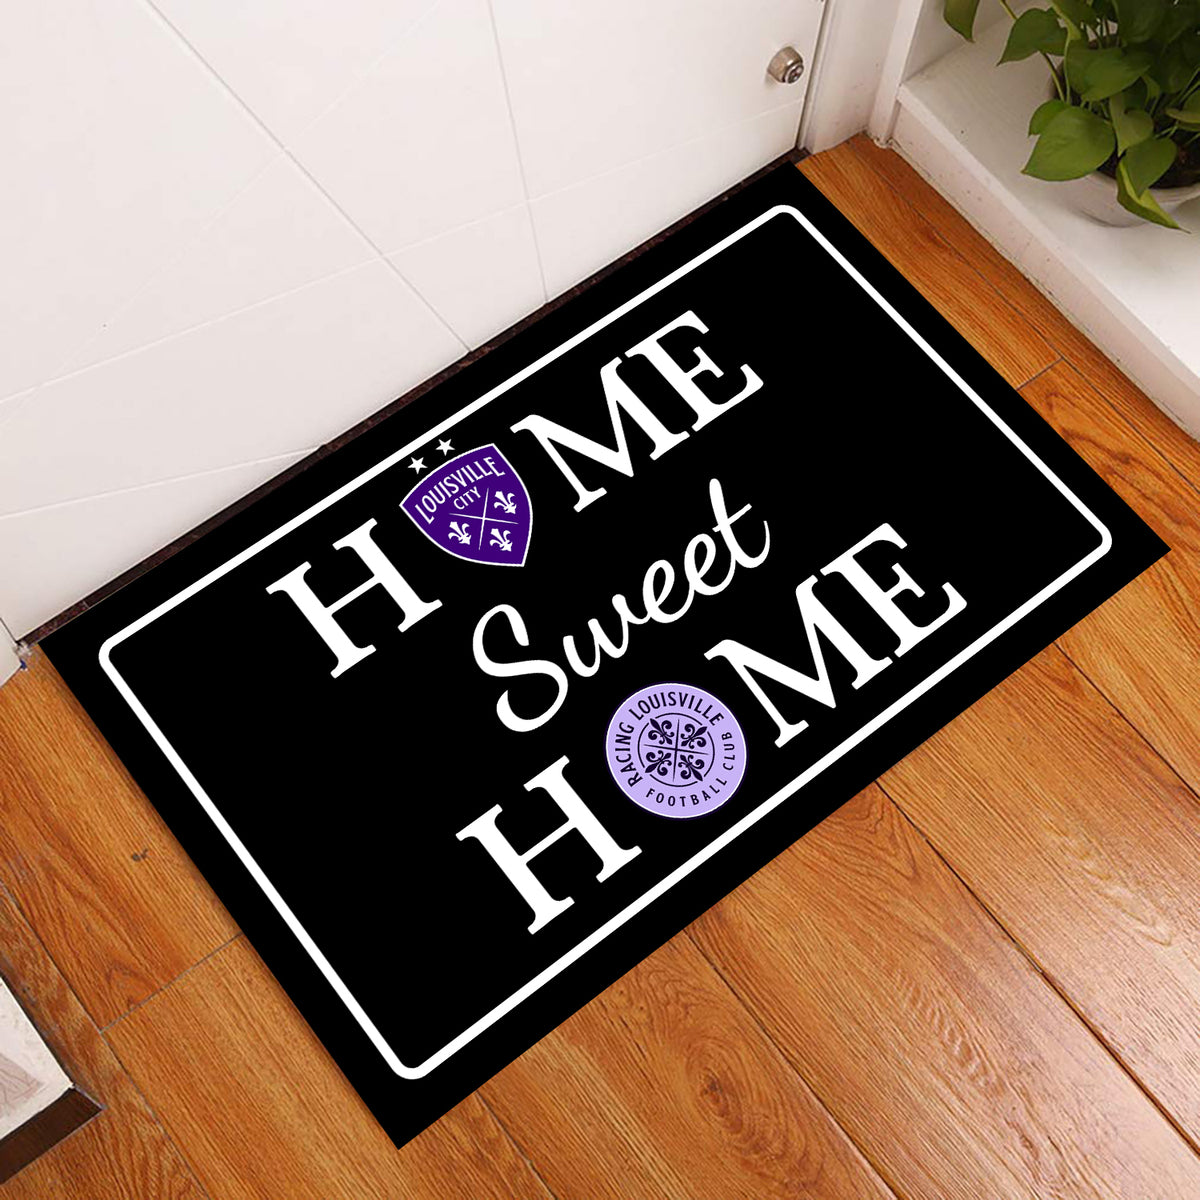 Home Sweet Home - Customized Doormat For Kathy Lescinski - Anti Slip Indoor Doormat